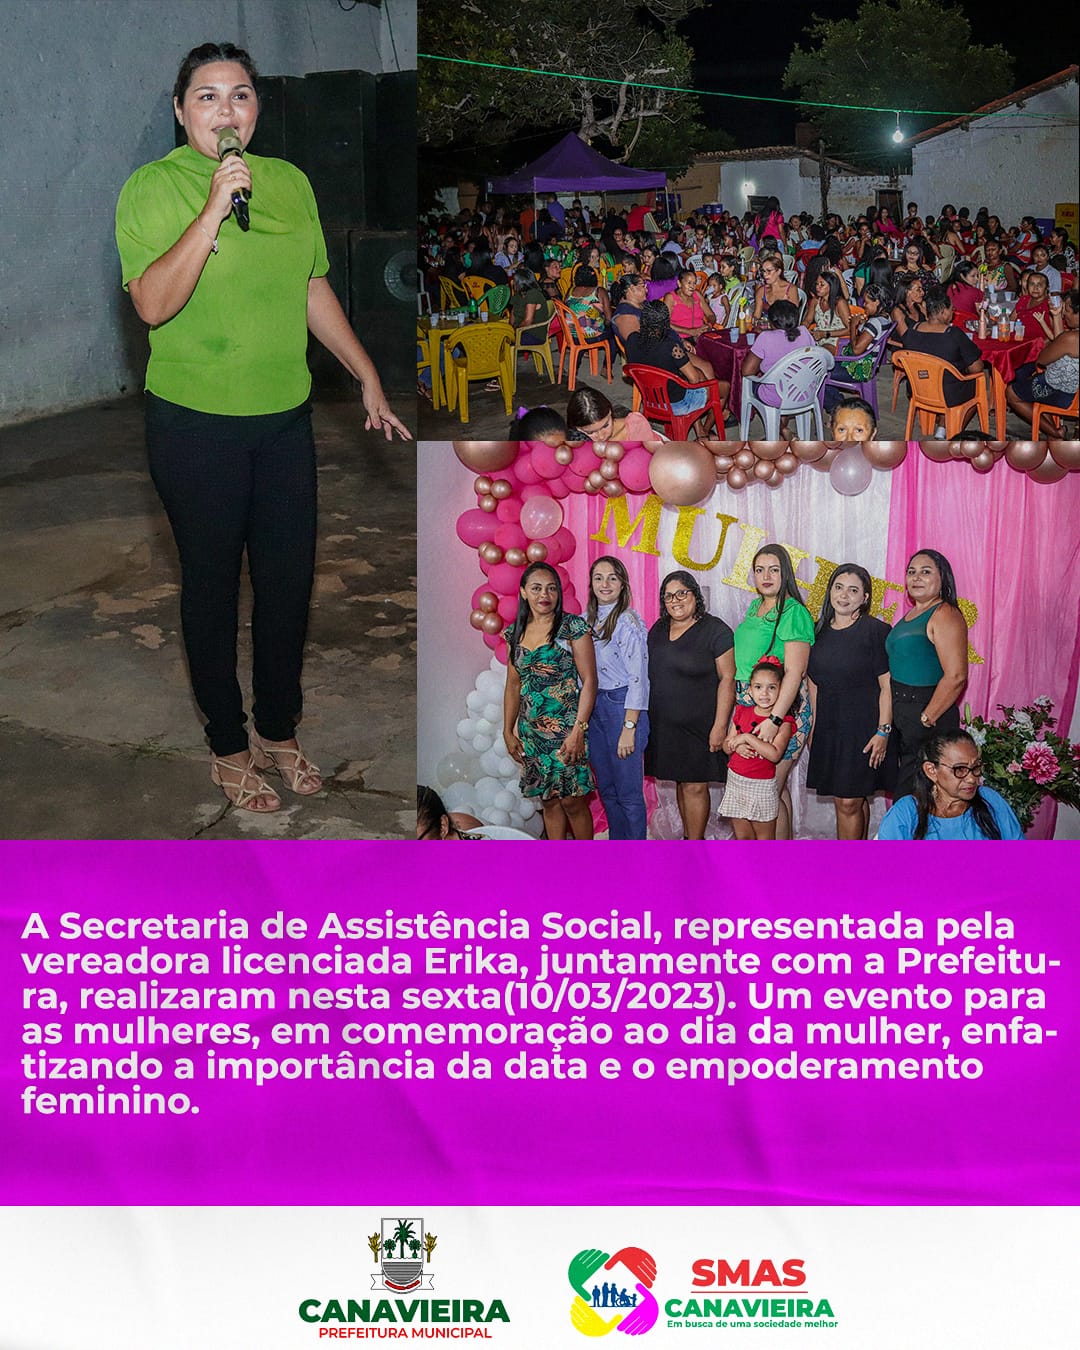  A Secretaria de Assistência Social realiza Um evento para as mulheres, em comemoração ao dia da mulher,